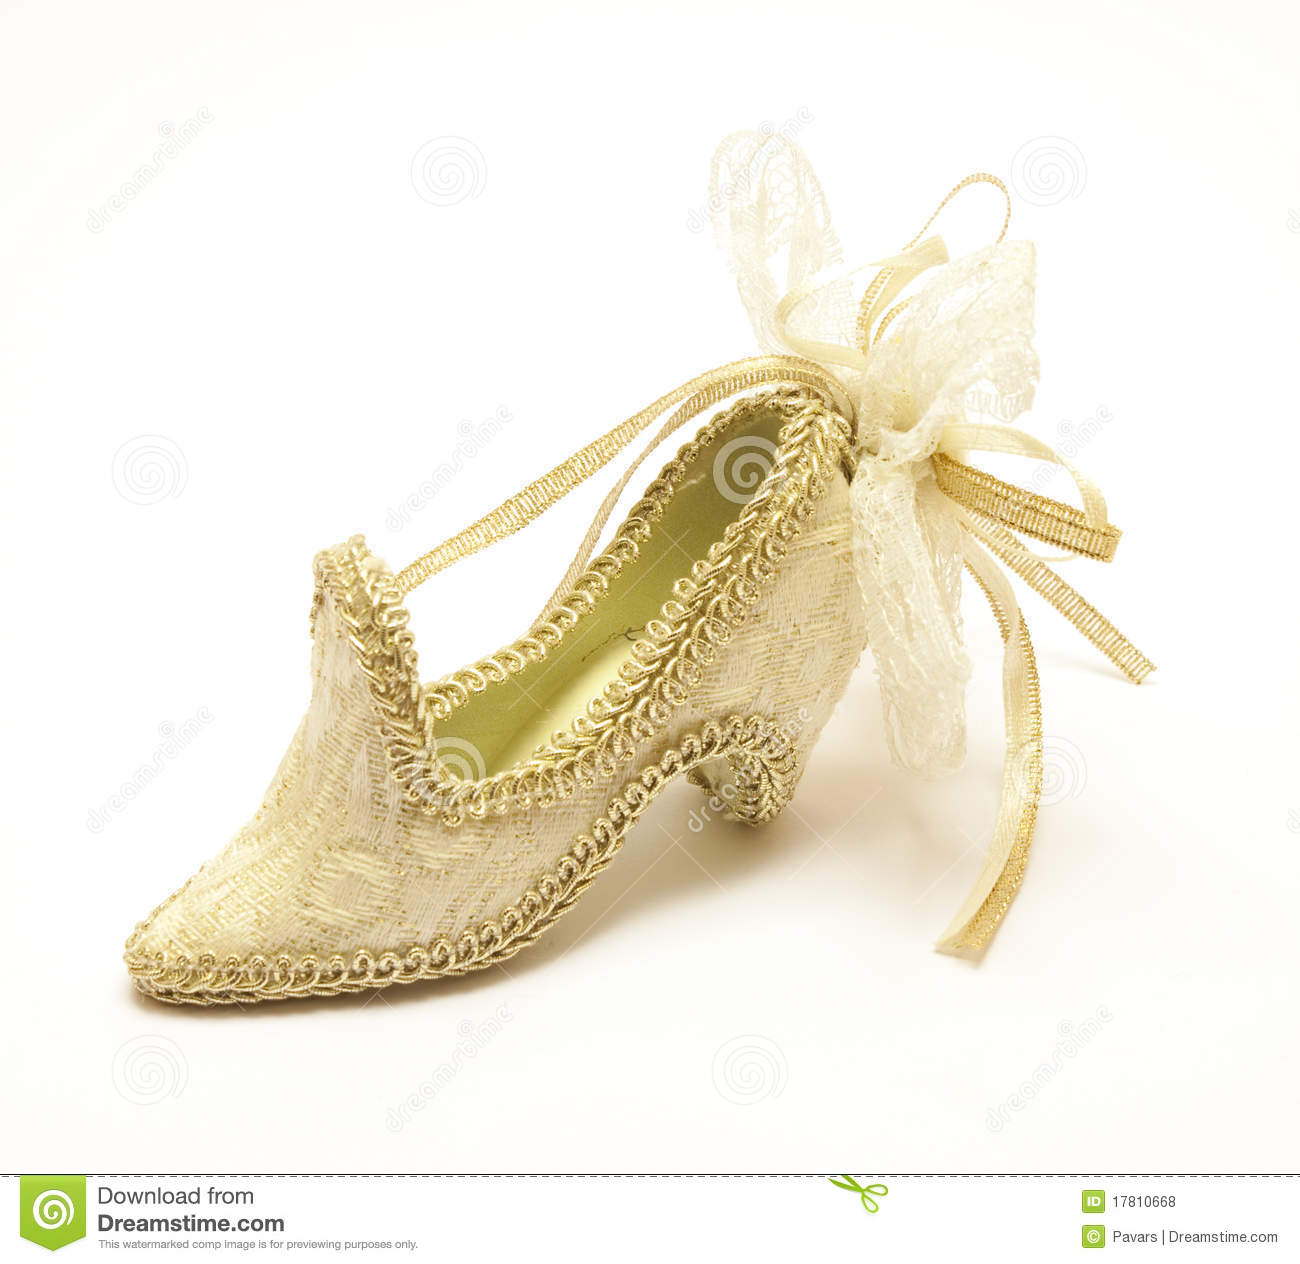 Pin Fancy Shoe Clipart On Pinterest